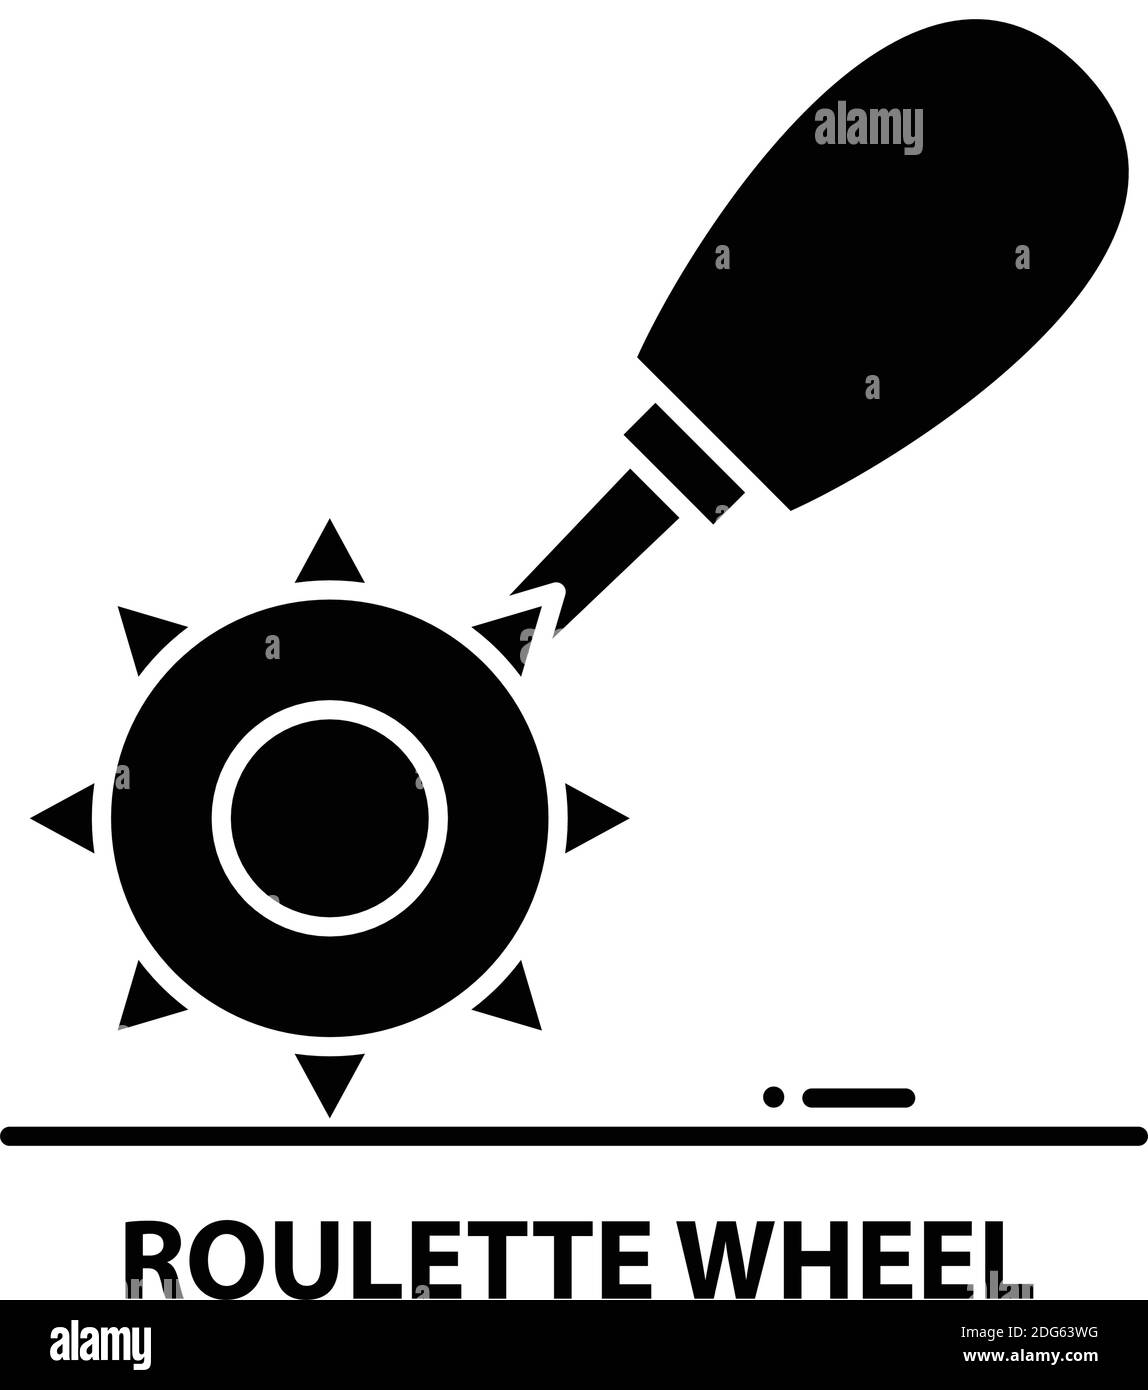 Roulette-Symbol, schwarzes Vektorzeichen mit editierbaren Konturen, Konzeptdarstellung Stock Vektor